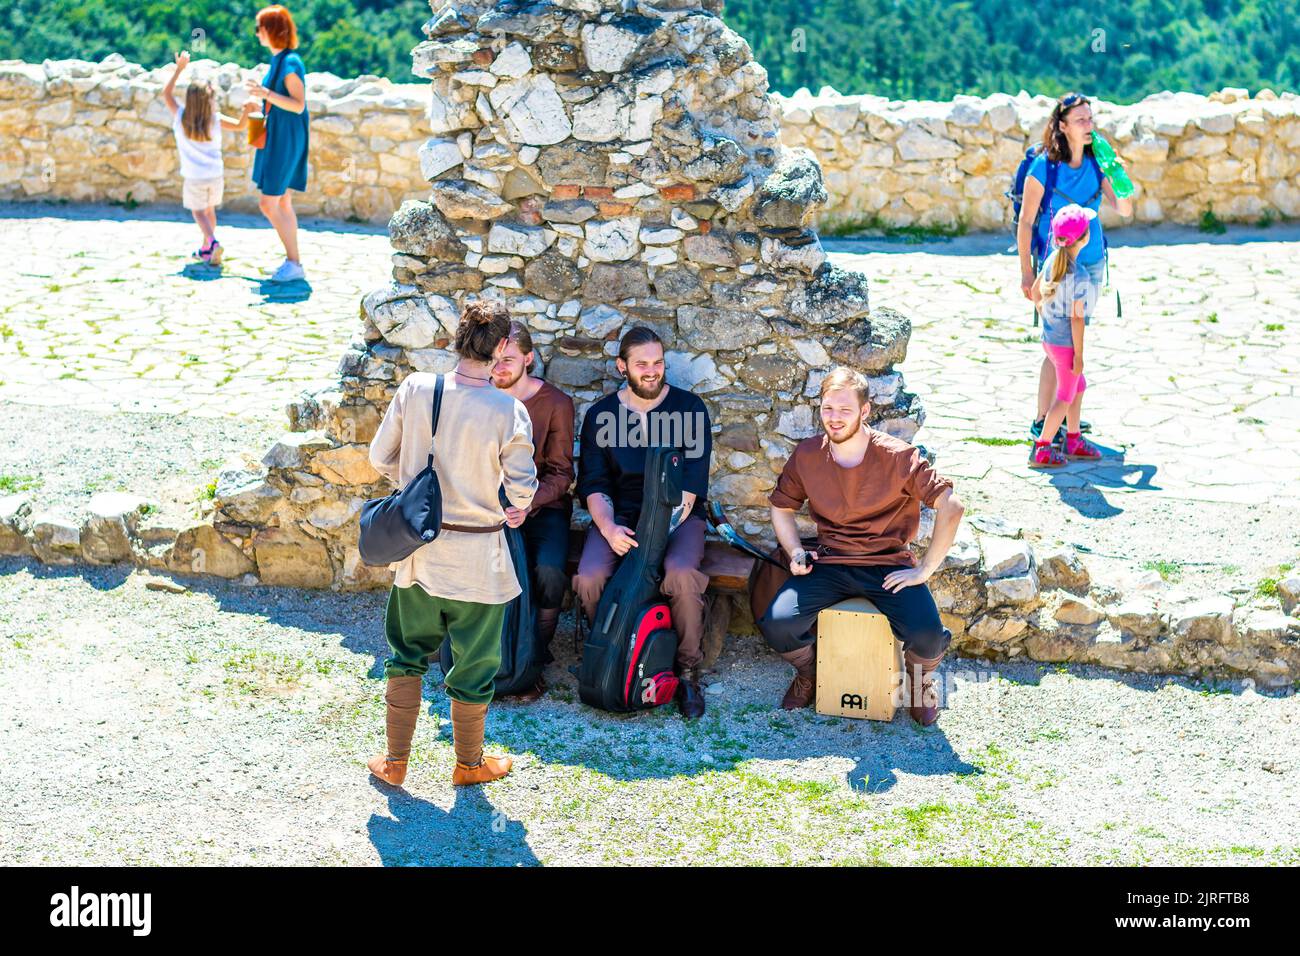 Cachtice, Eslovaquia - 4,7.2020: La gente juega juegos medievales en el castillo de Cachtice, Eslovaquia. Famoso castillo conocido por la leyenda de la dama de sangre Bathor Foto de stock